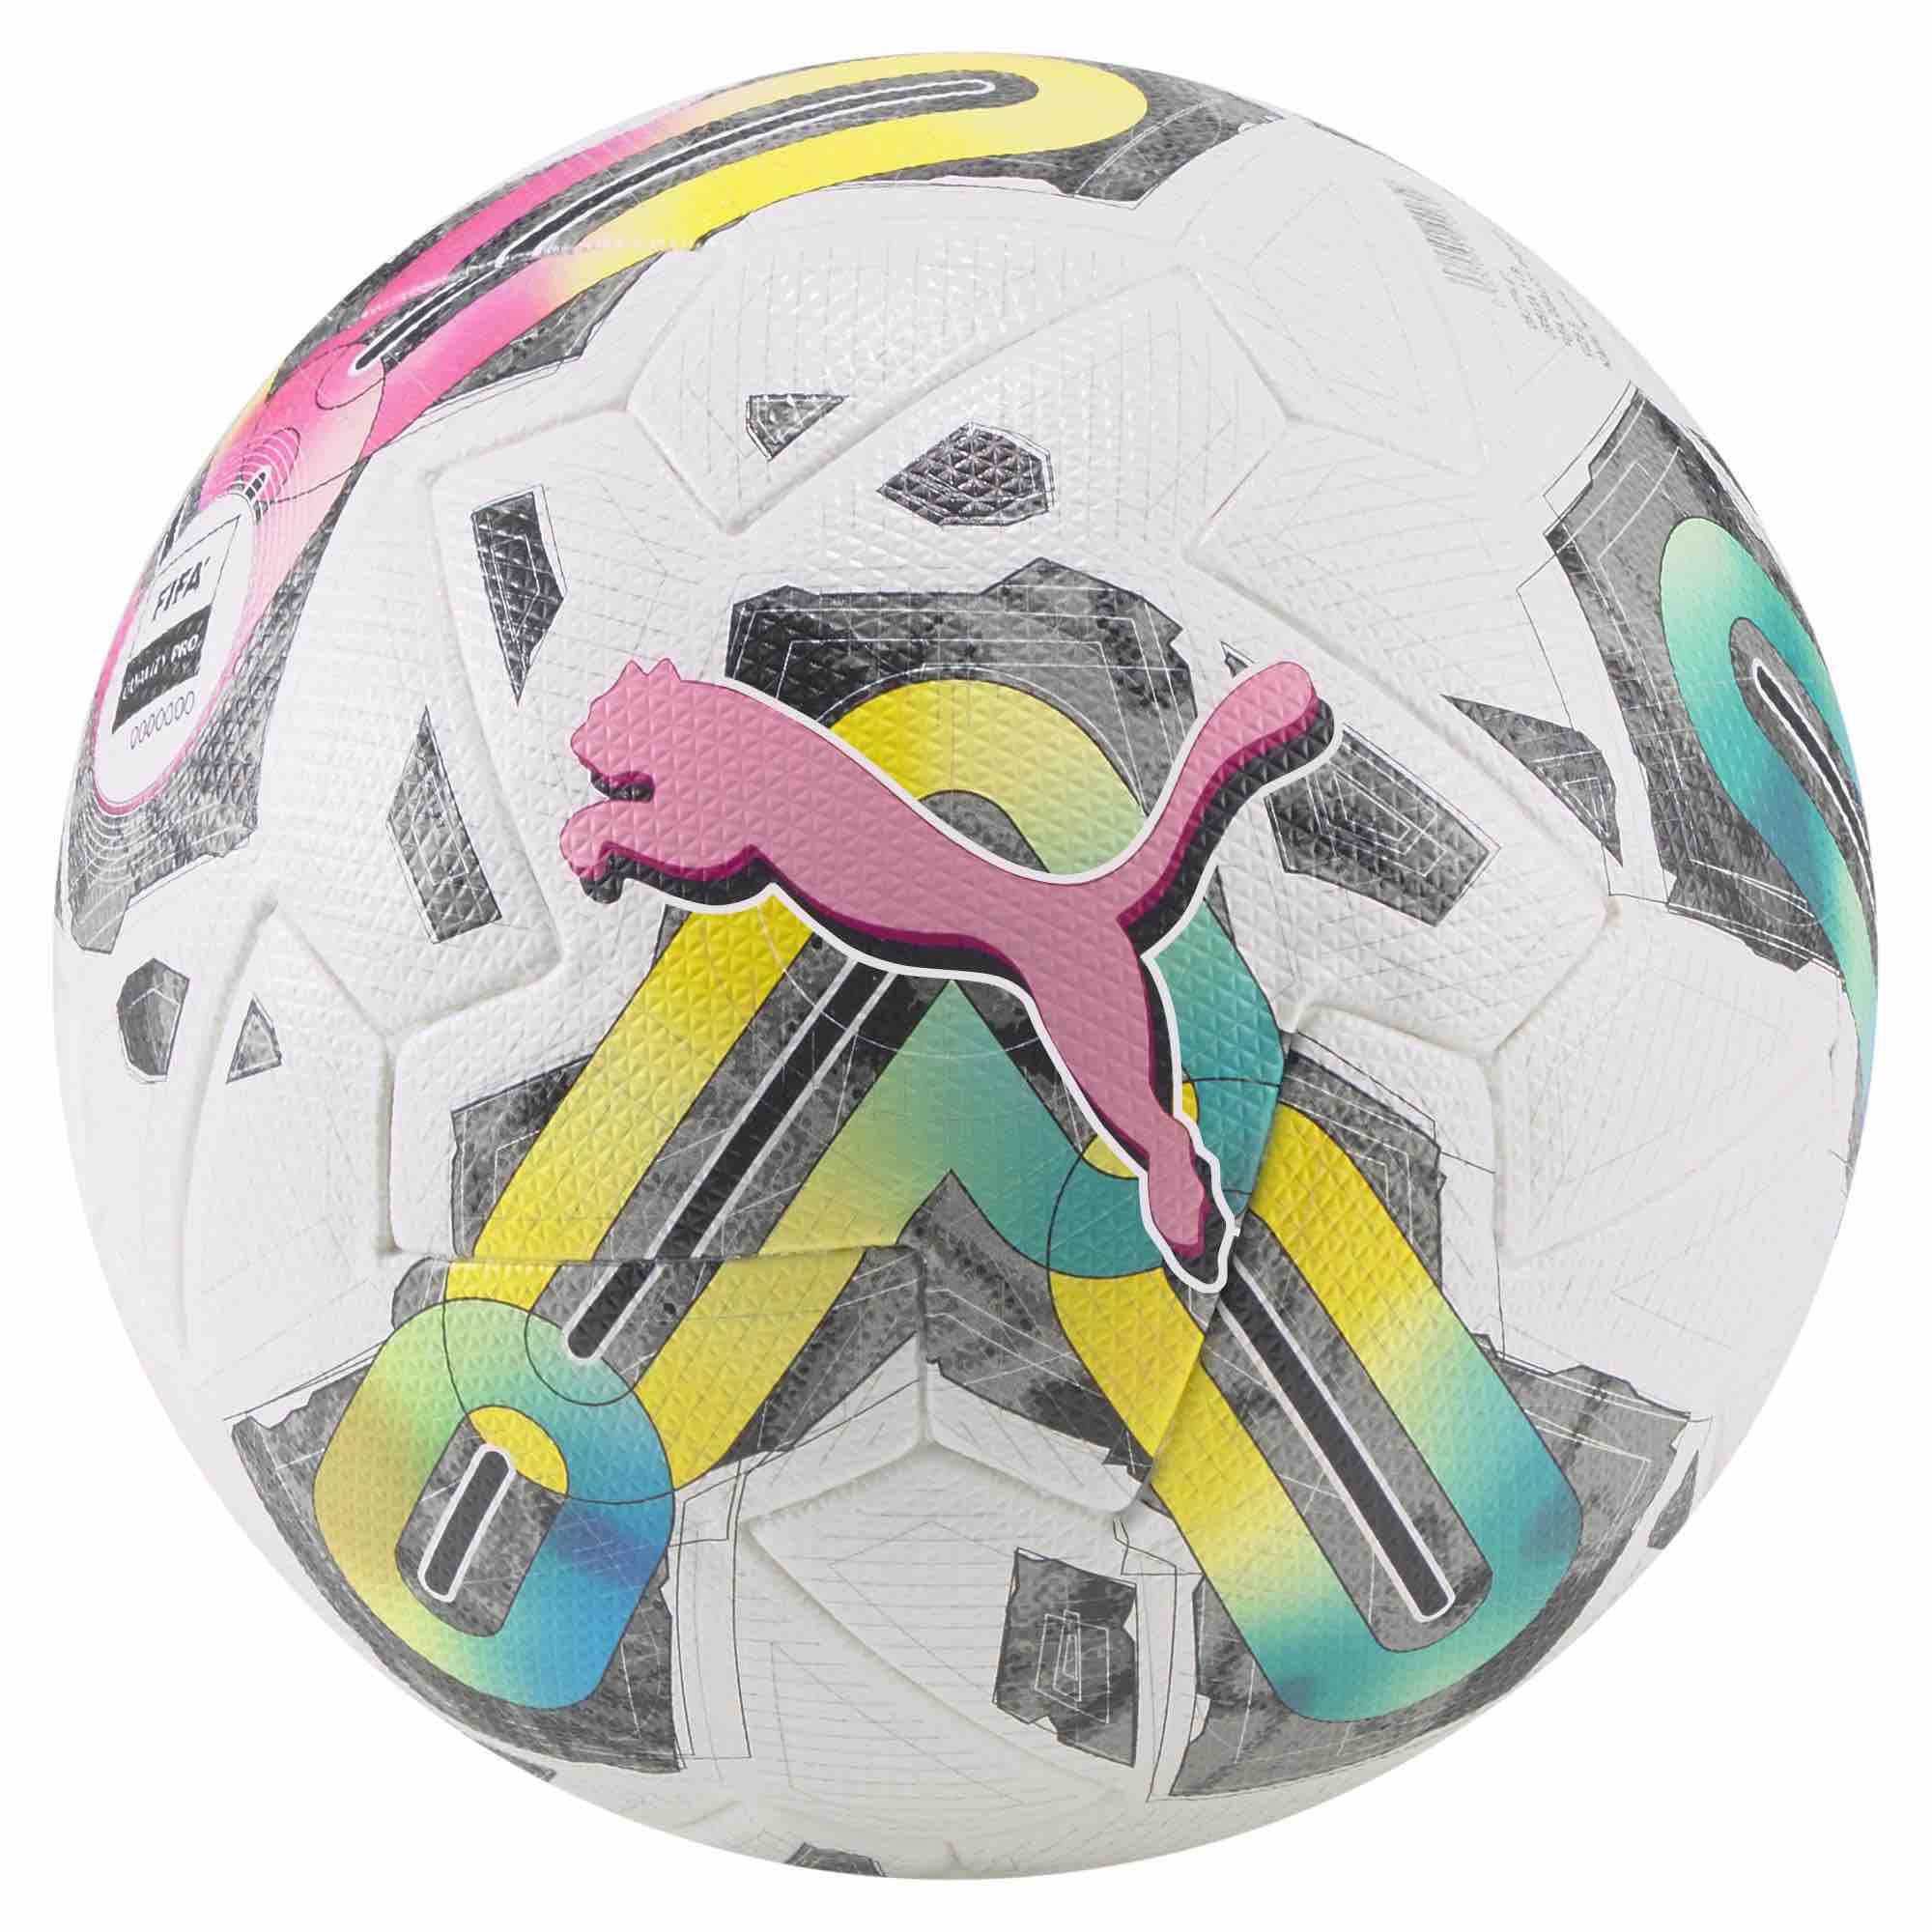 Official Match Soccer Balls– Premium Soccer